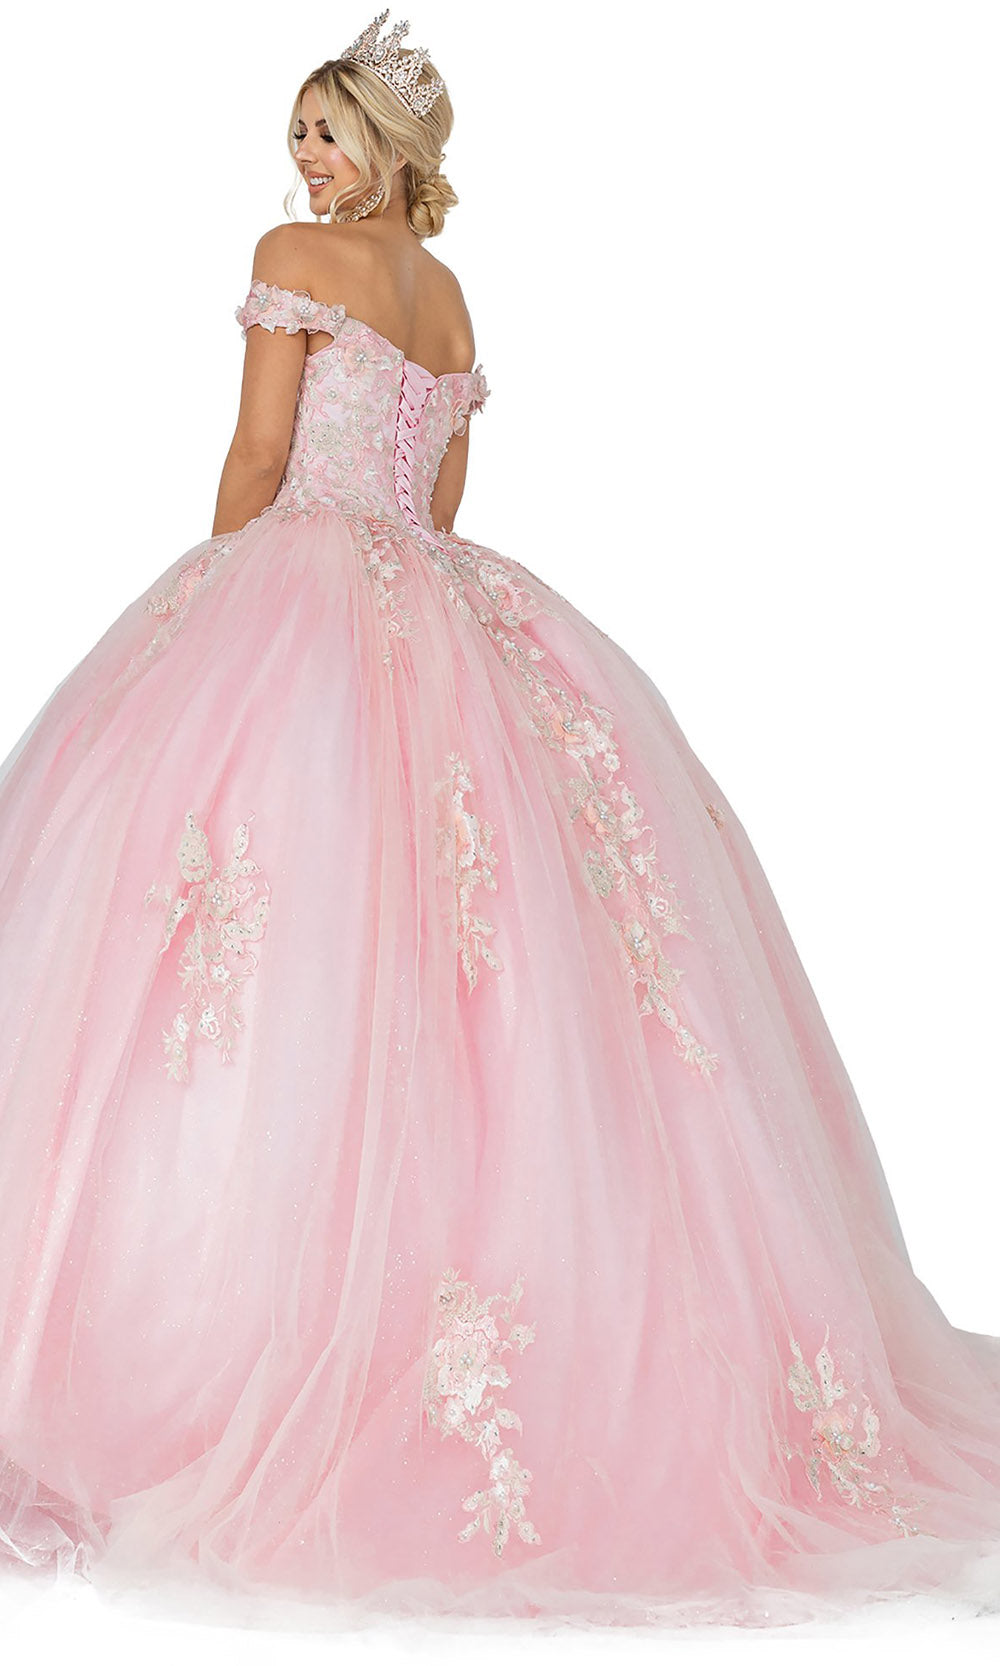 Dancing Queen - 1592 Beaded Floral Applique Gown In Pink